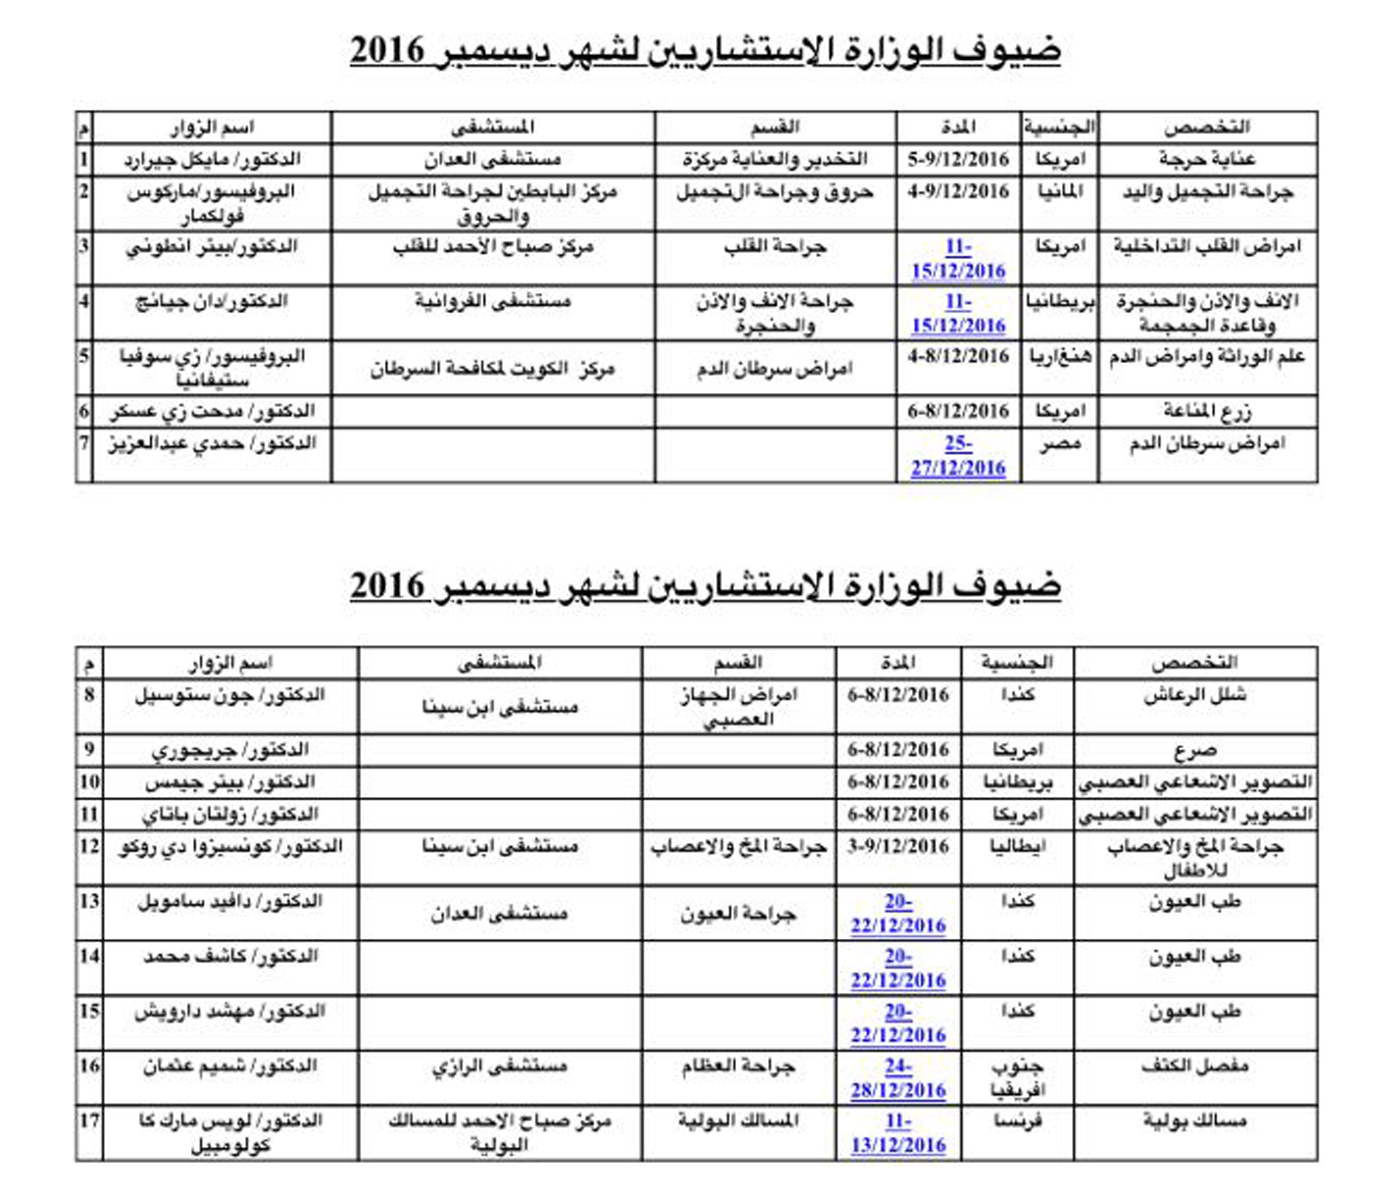 الصحة الكويتية تستضيف 17 استشاريا زائرا لاجراء عمليات نادرة                                                                                                                                                                                               